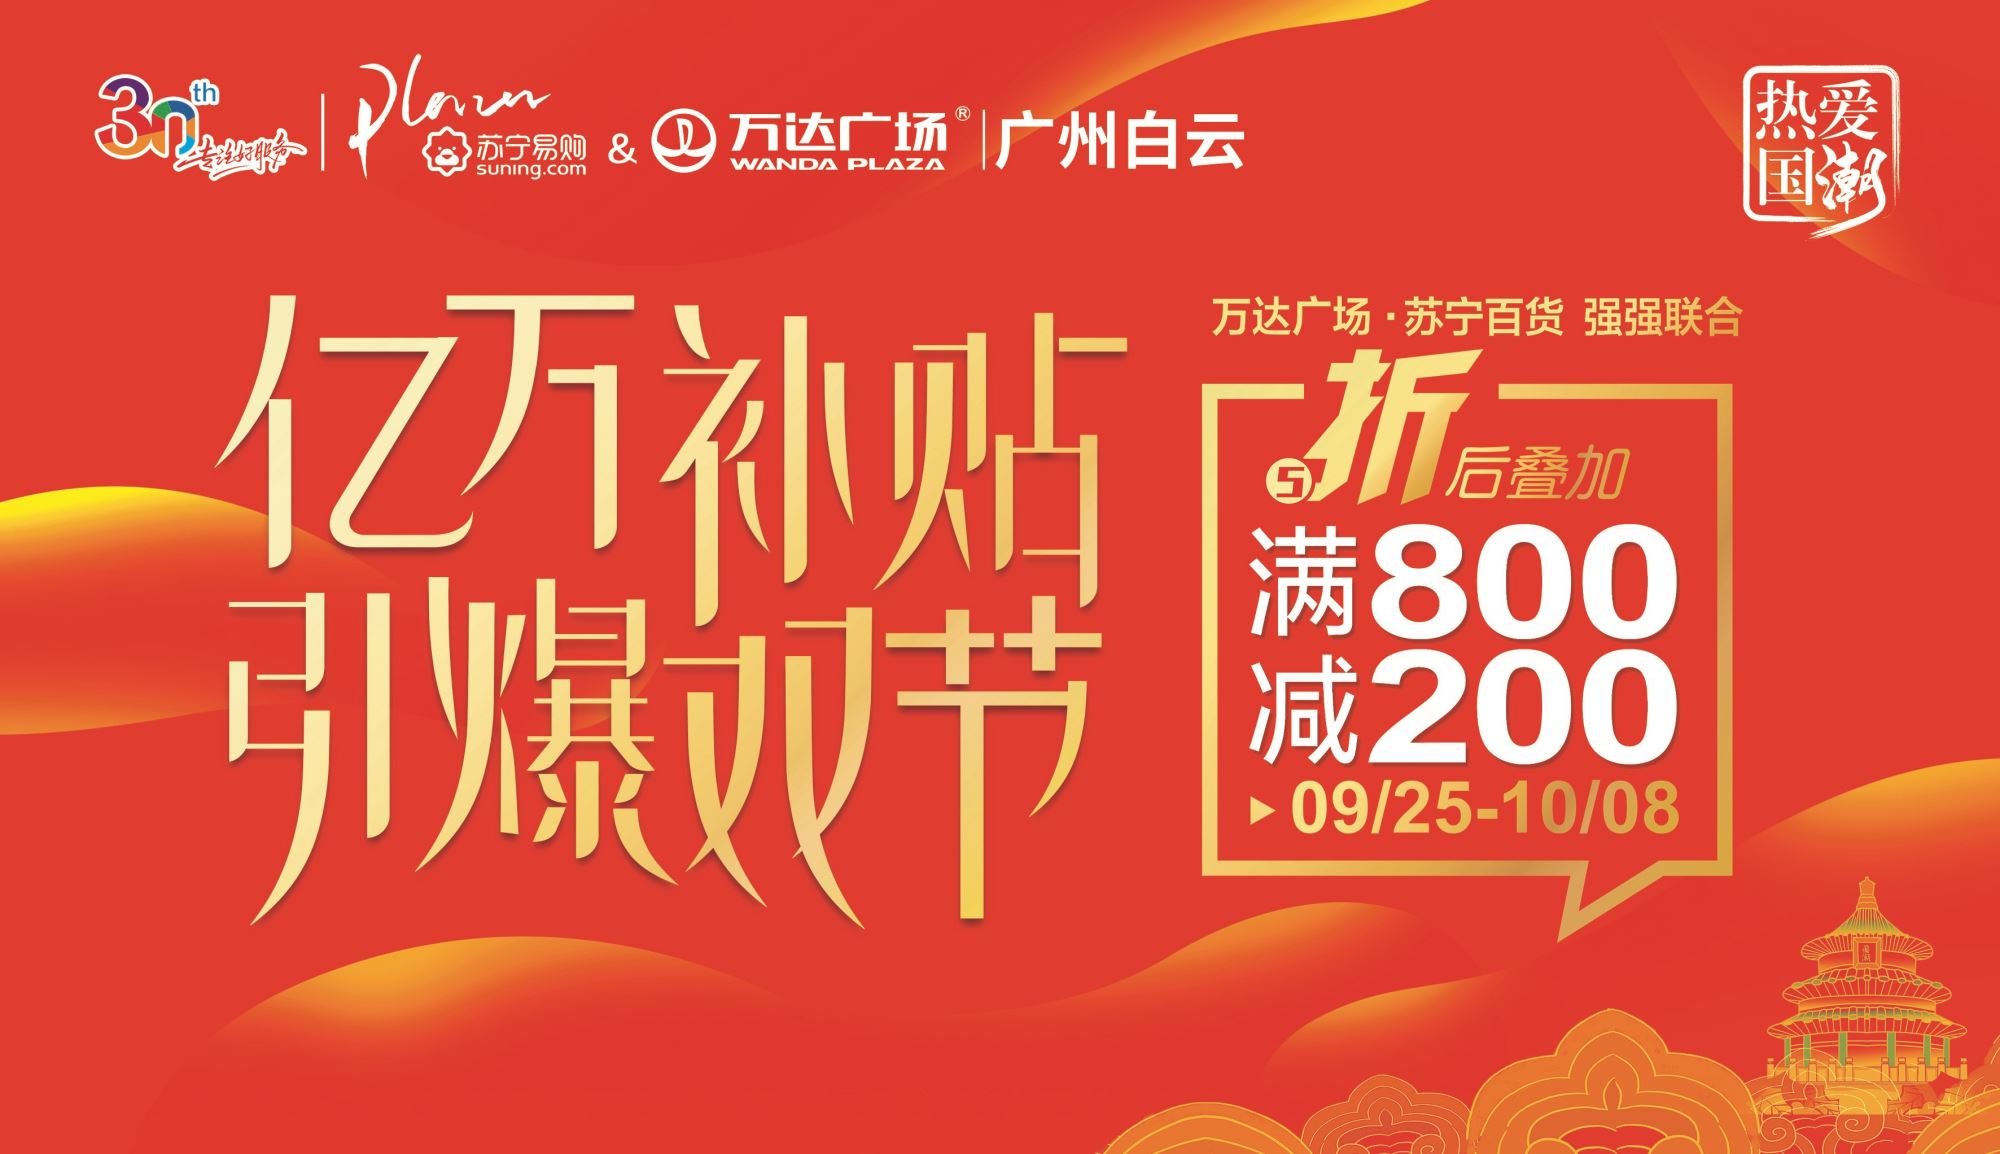 广州白云万达广场举办“红动国潮嗨购节” 打造2020年首个超长消费高峰